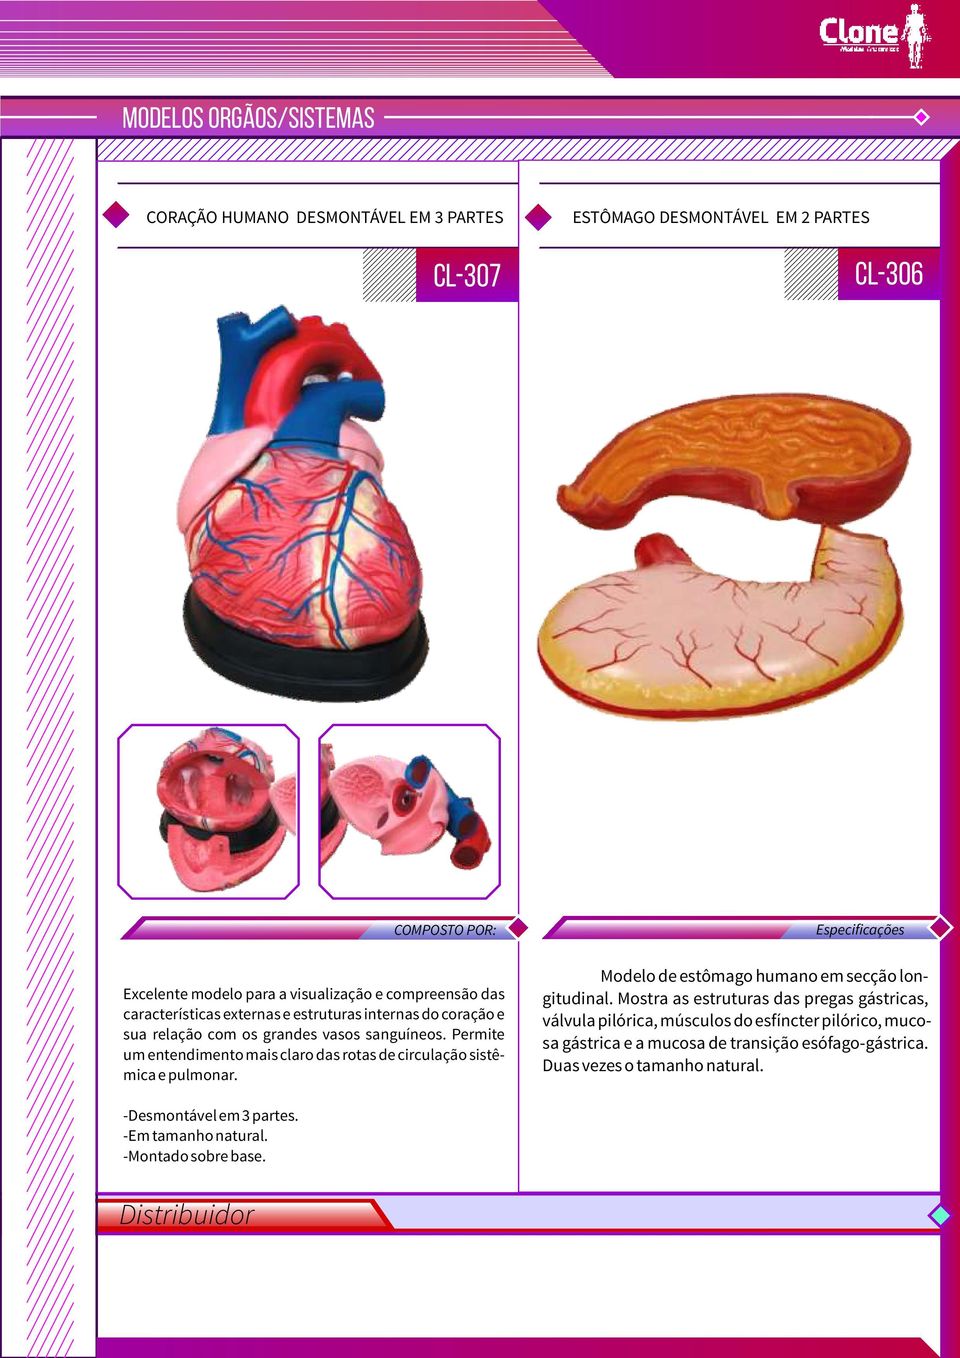 Permite um entendimento mais claro das rotas de circulação sistêmica e pulmonar. Modelo de estômago humano em secção longitudinal.